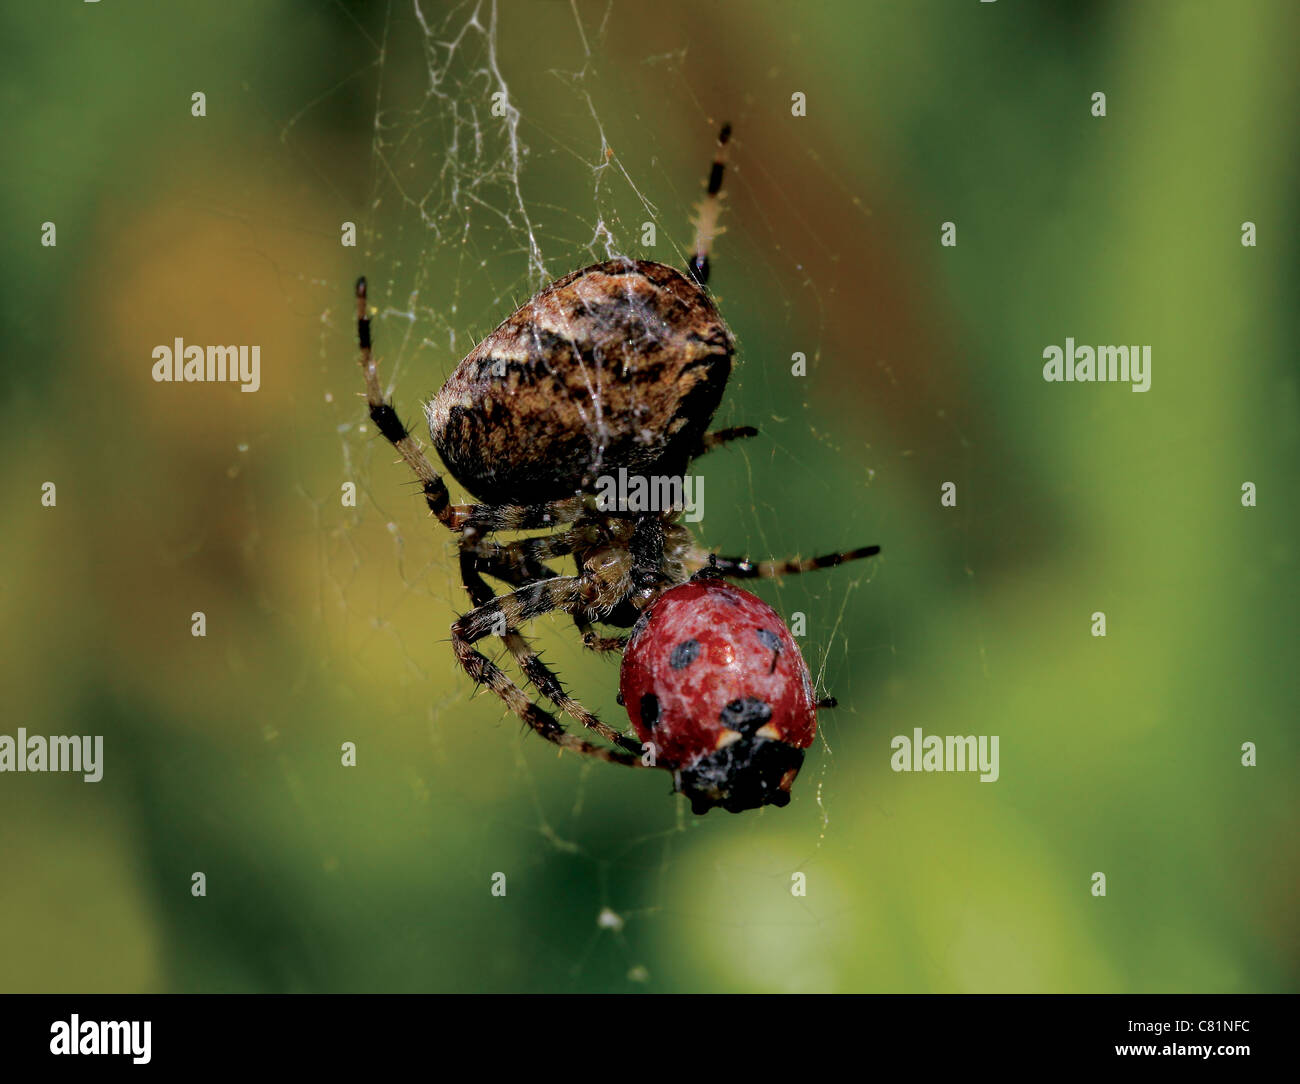 Plan macro sur une araignée des jardins britanniques (Araneus diadematus) manger une coccinelle Banque D'Images